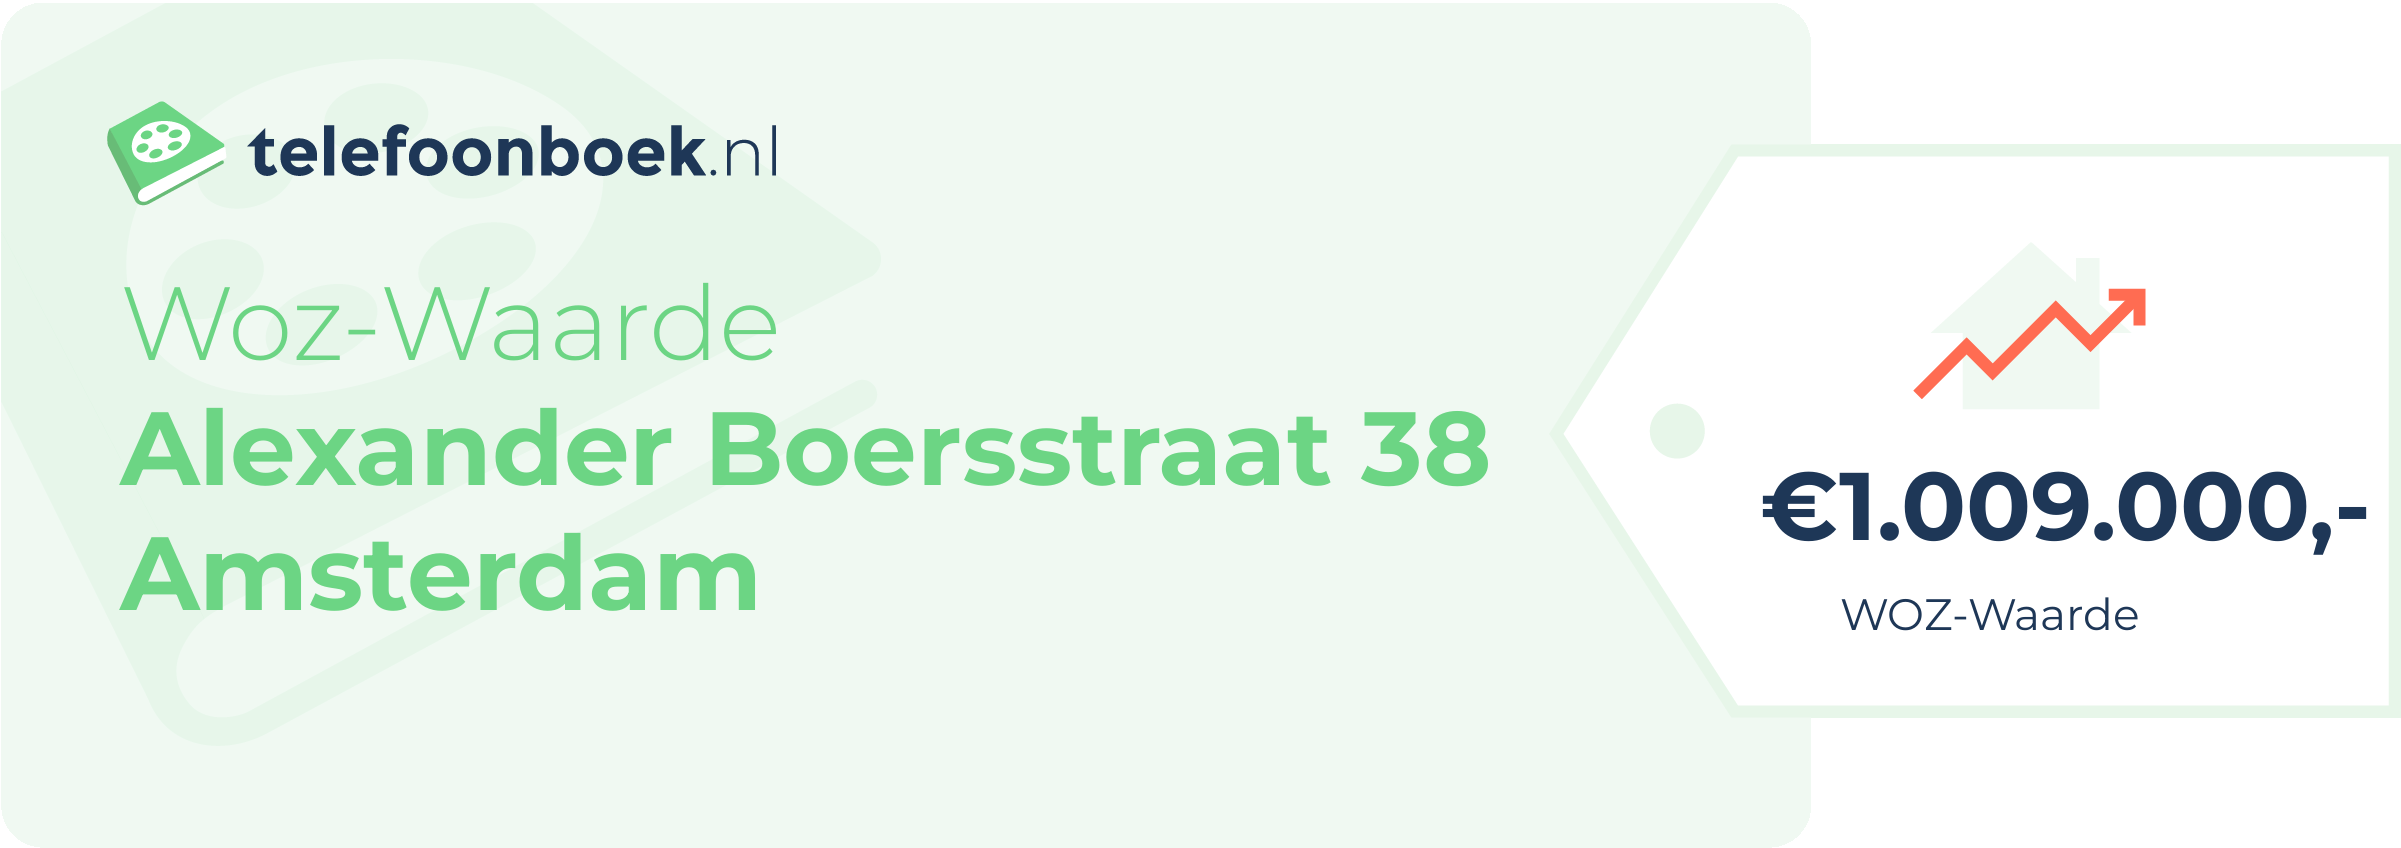 WOZ-waarde Alexander Boersstraat 38 Amsterdam